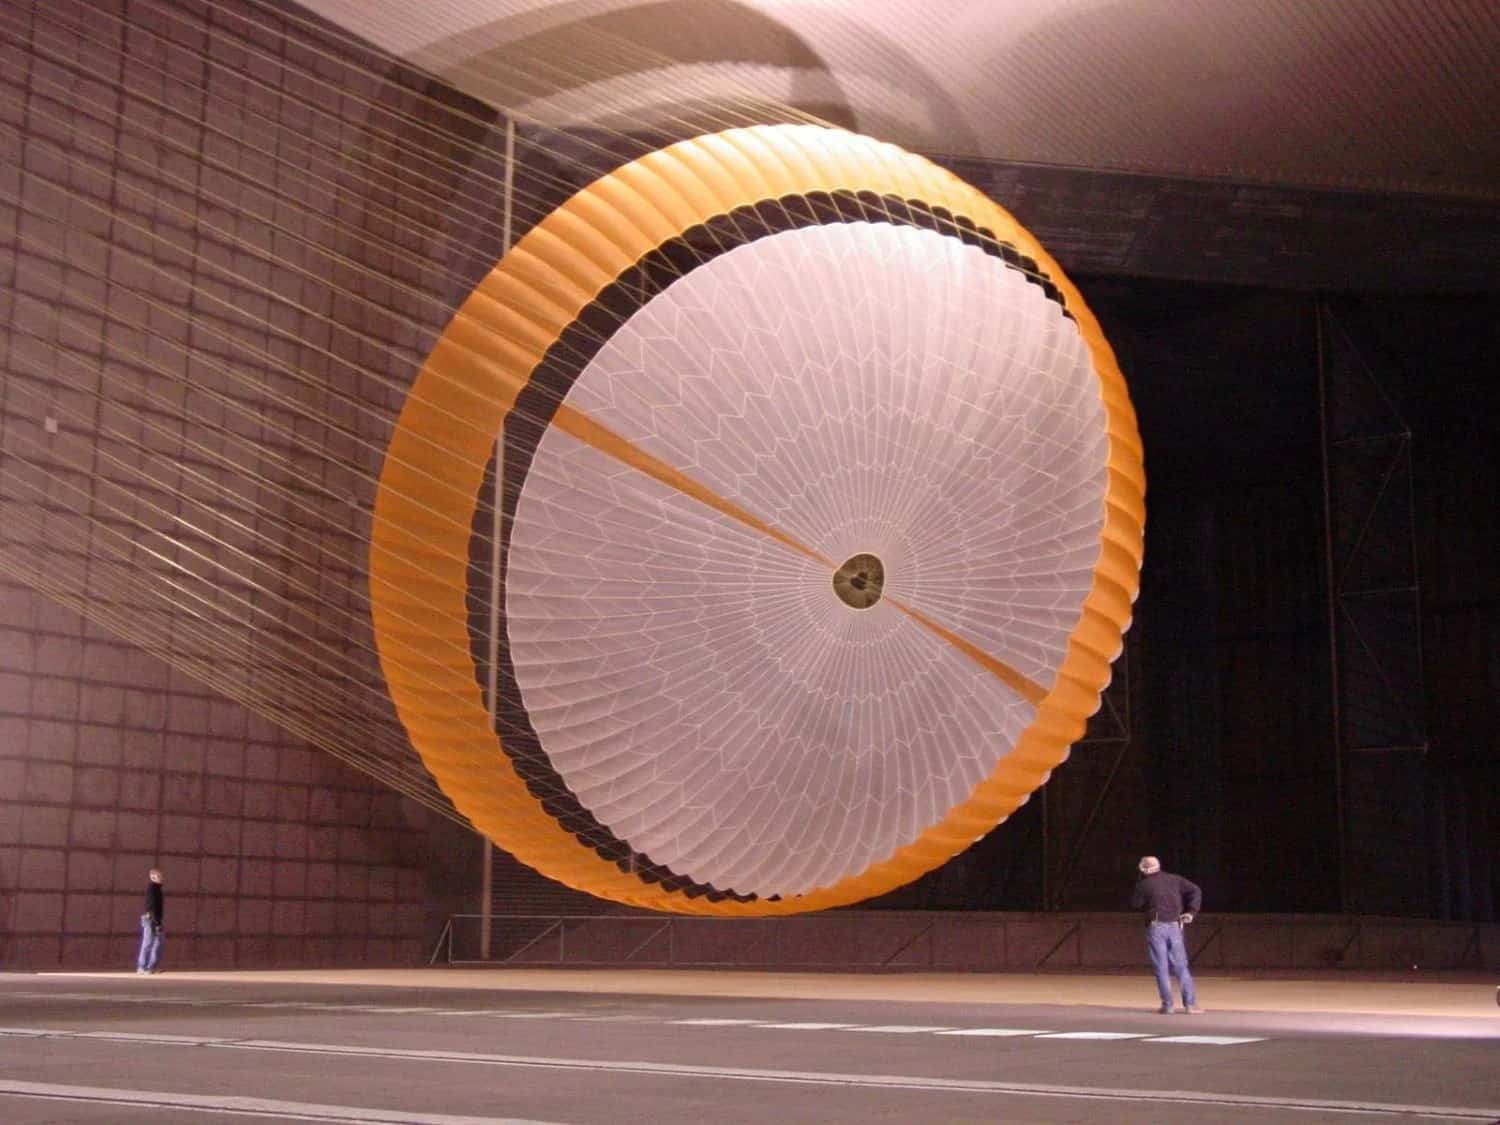 اختُبر أحد تصاميم المظلات المبكّر لنظام الهبوط الذي طُوّر في مختبر علوم المريخ في أكتوبر/ تشرين الأول 2007 في النفق الهوائي ضمن مجمع الديناميكا الهوائية الوطني الكامل النطاق. وكالة ناسا/ مختبر الدفع النفاث/ شركة بايونير إيروسبيس